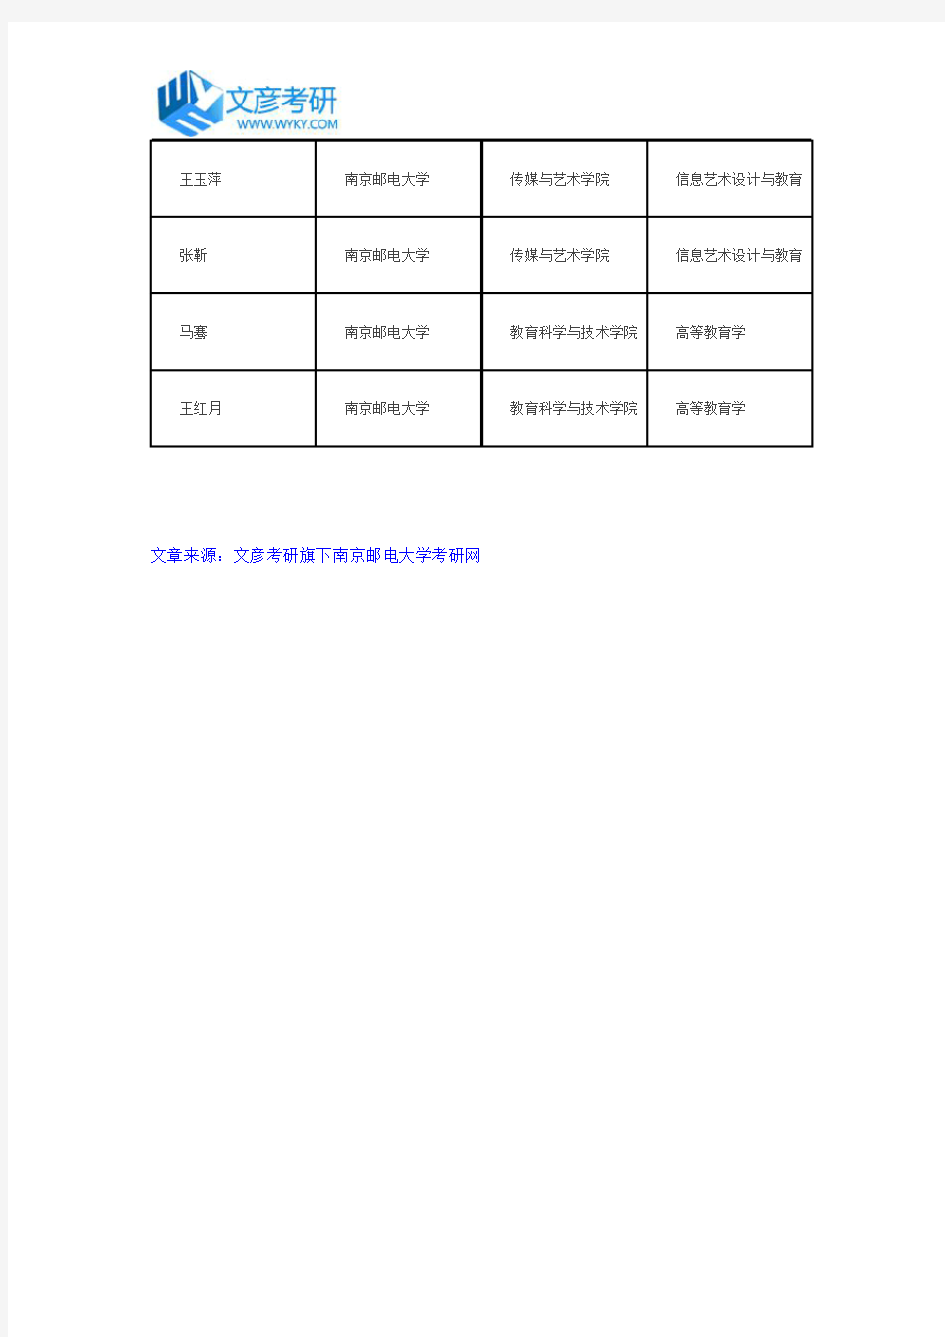 南京邮电大学2017年管理学院拟录取推荐免试研究生名单公示